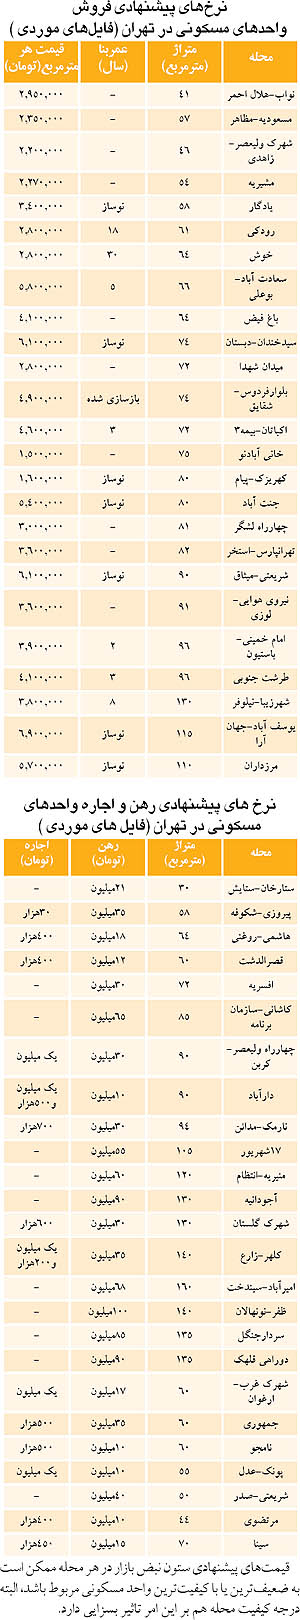  قیمت مسکن و اجاره بها در مناطق مختلف تهران